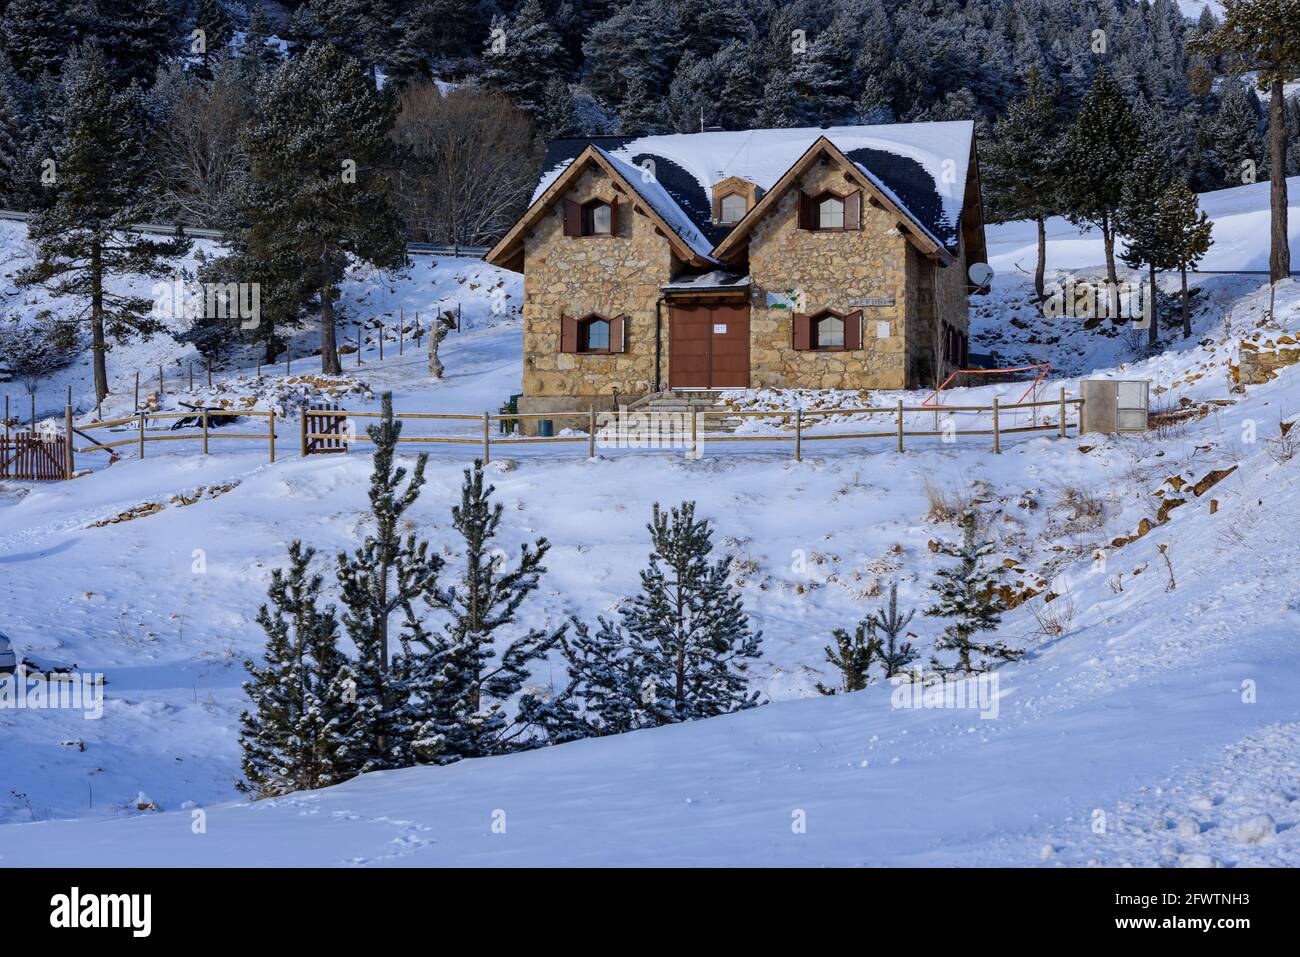 Schneehütte Rasos de Peguera im Winter (Berguedà, Katalonien, Spanien, Pyrenäen) ESP: Refugio de los Rasos de Peguera con nieve en invierno (España) Stockfoto